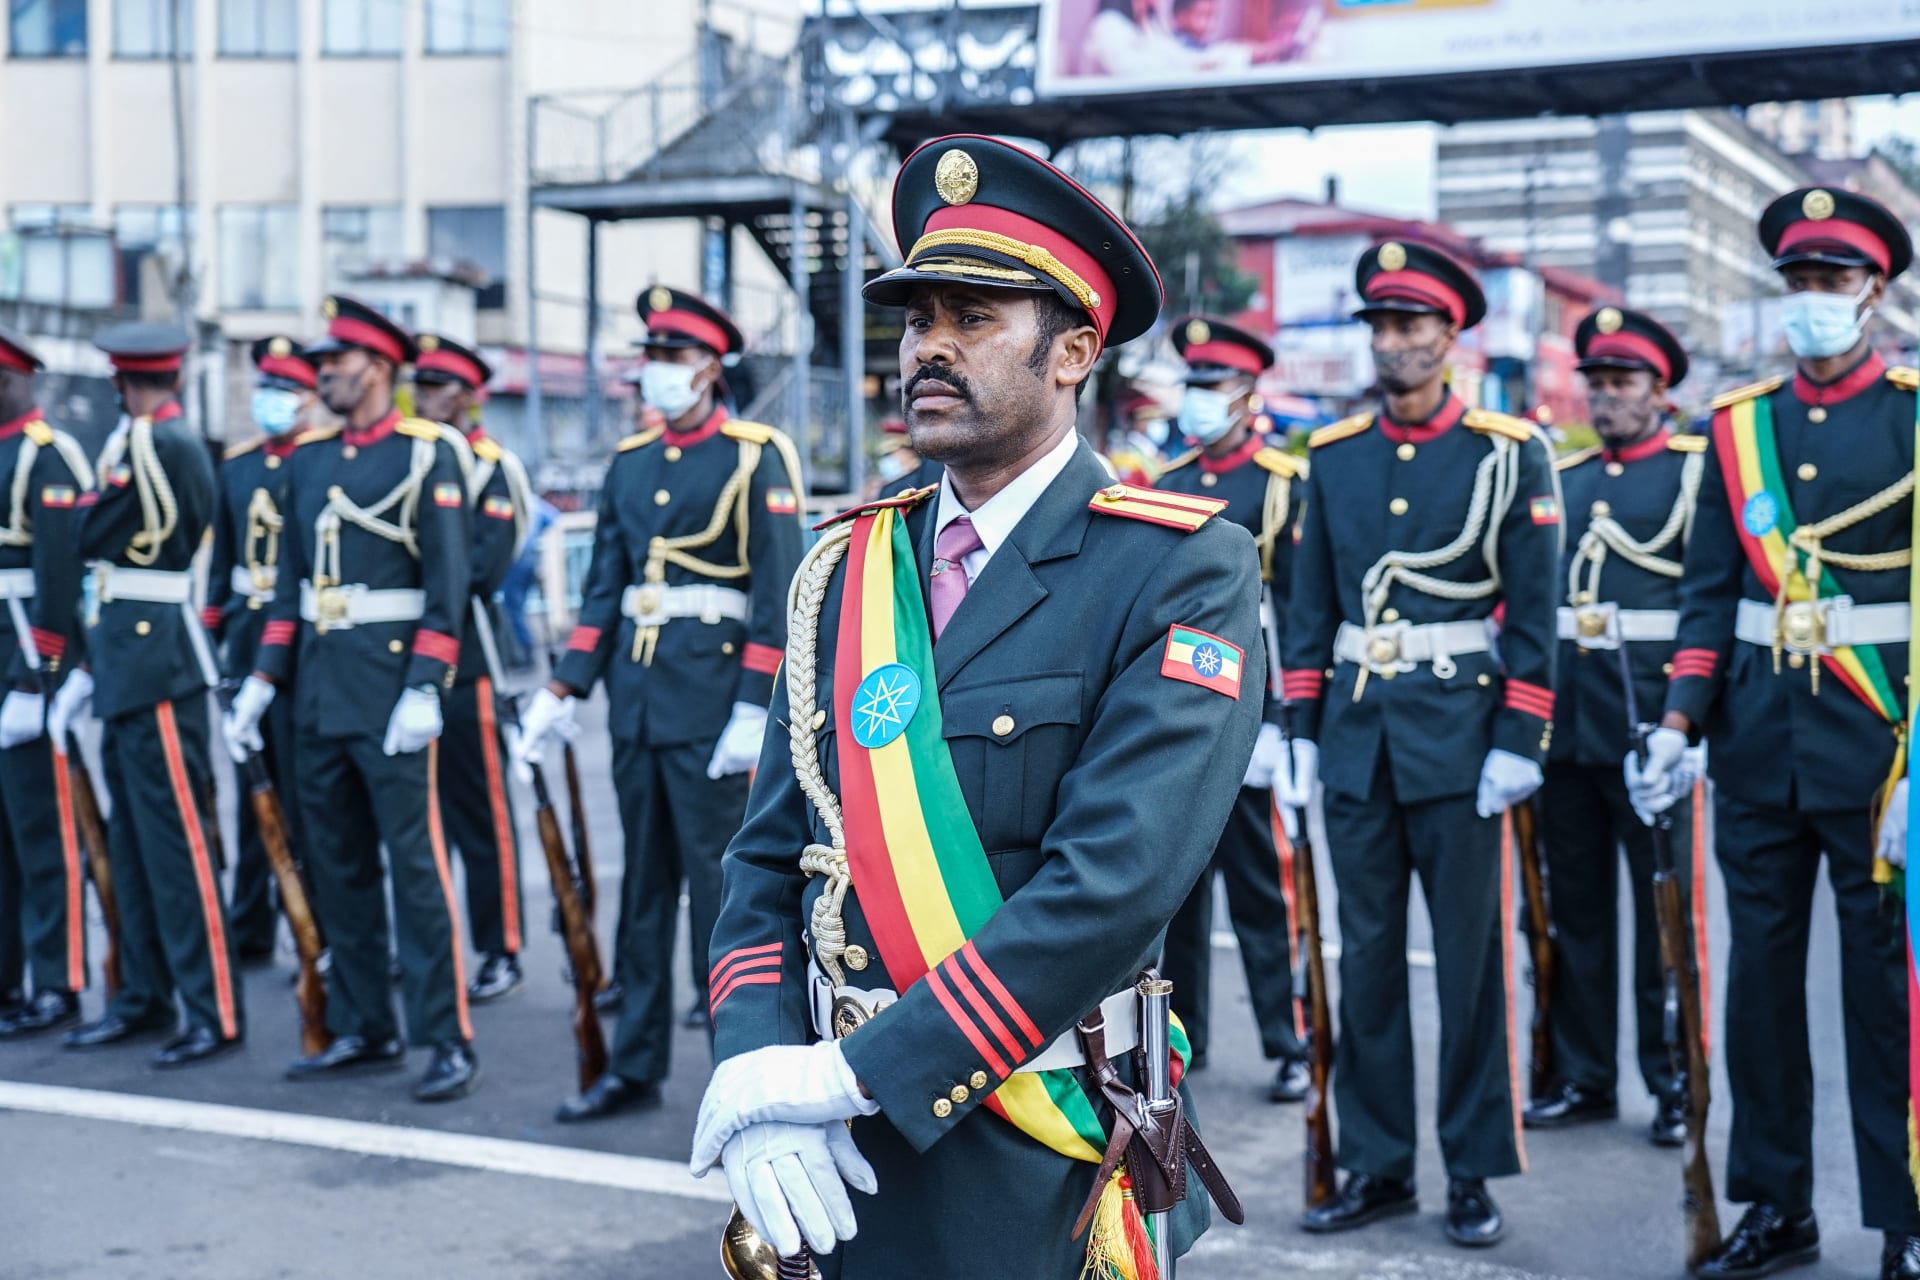 إثيوبيا تعلن توقيع اتفاقيات عسكرية مع روسيا لتحديث قدرات جيشها